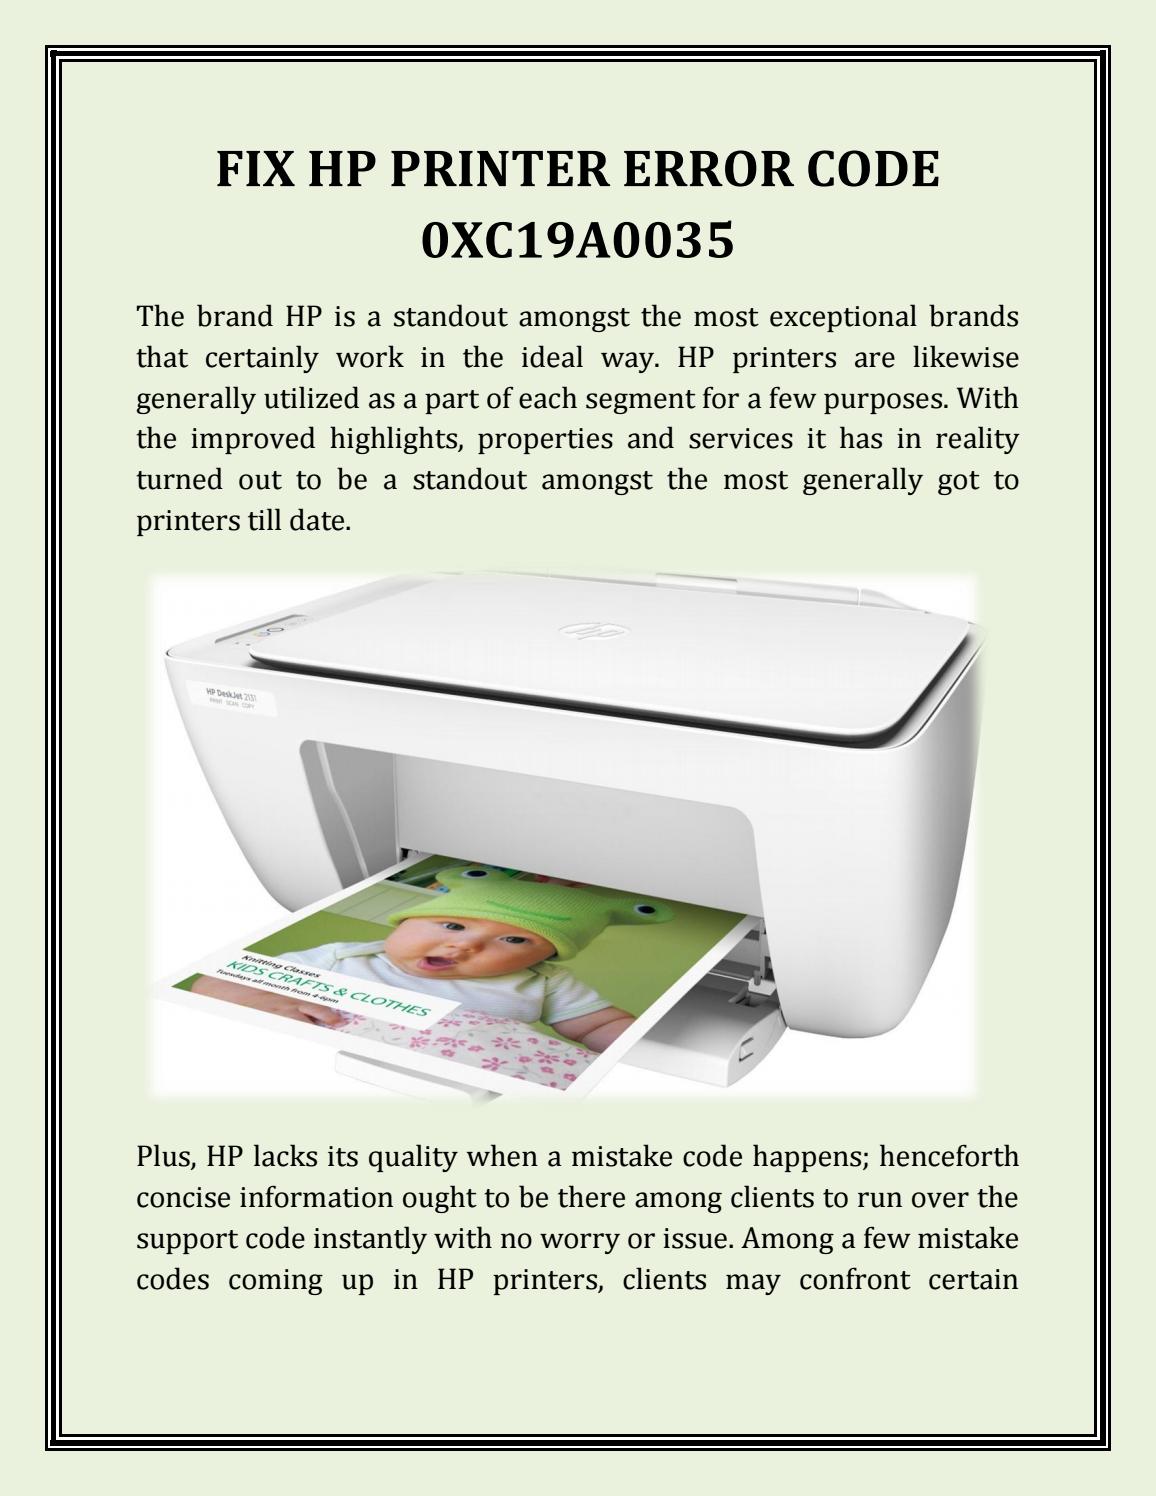 hp printer error mode oxc19a0035